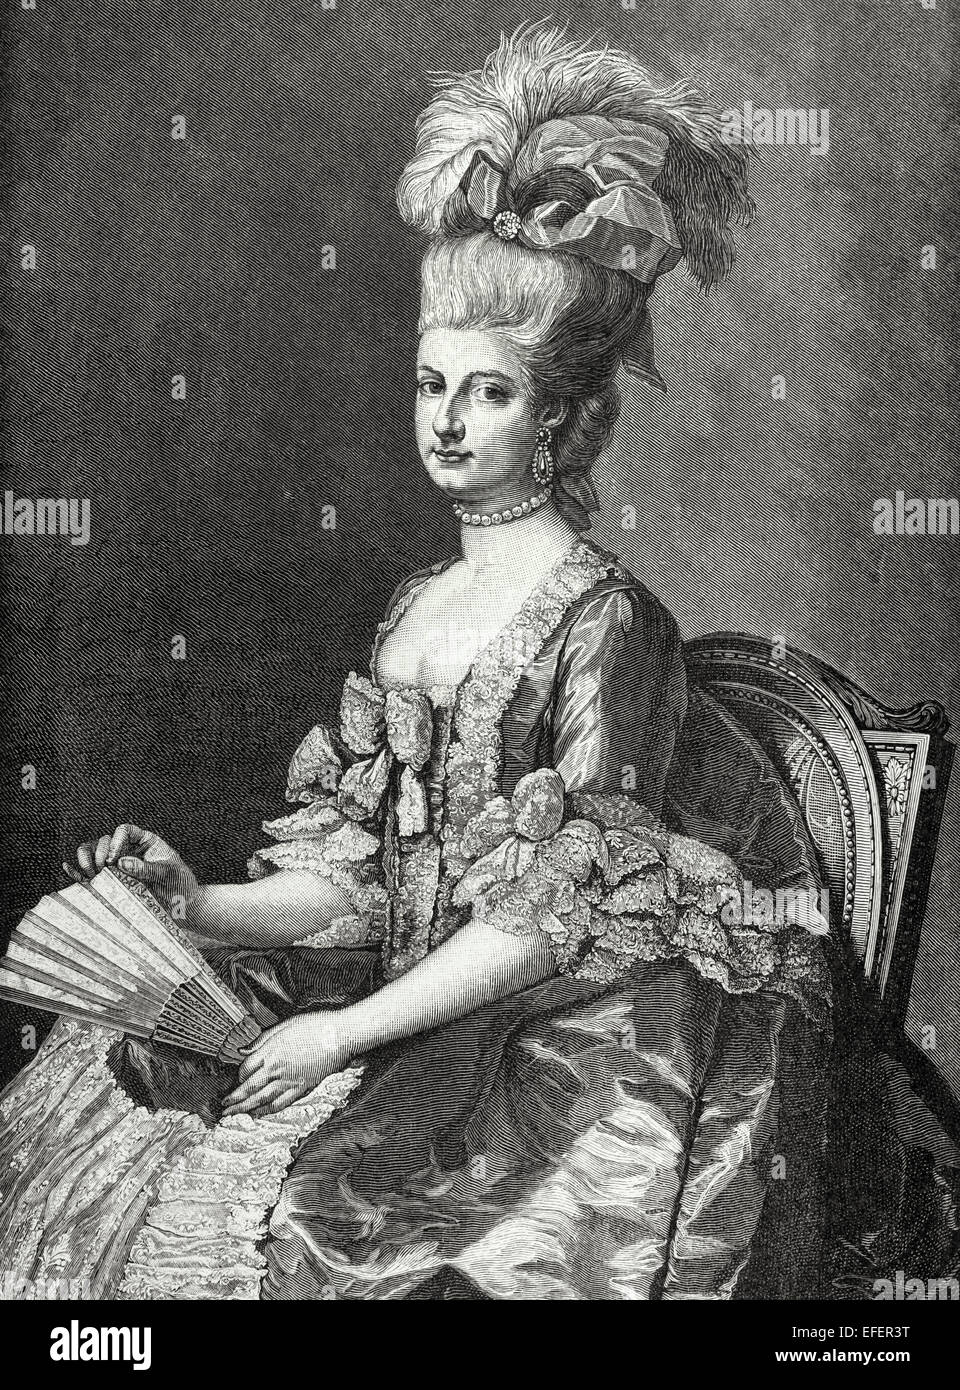 Maria Christina, Herzogin von Teschen (1742-1798), genannt "Mimi", war der Statthalter der österreichischen Niederlande von 1781 bis 1793. Porträt. Gravur in "Historia Universal", 1885. Stockfoto